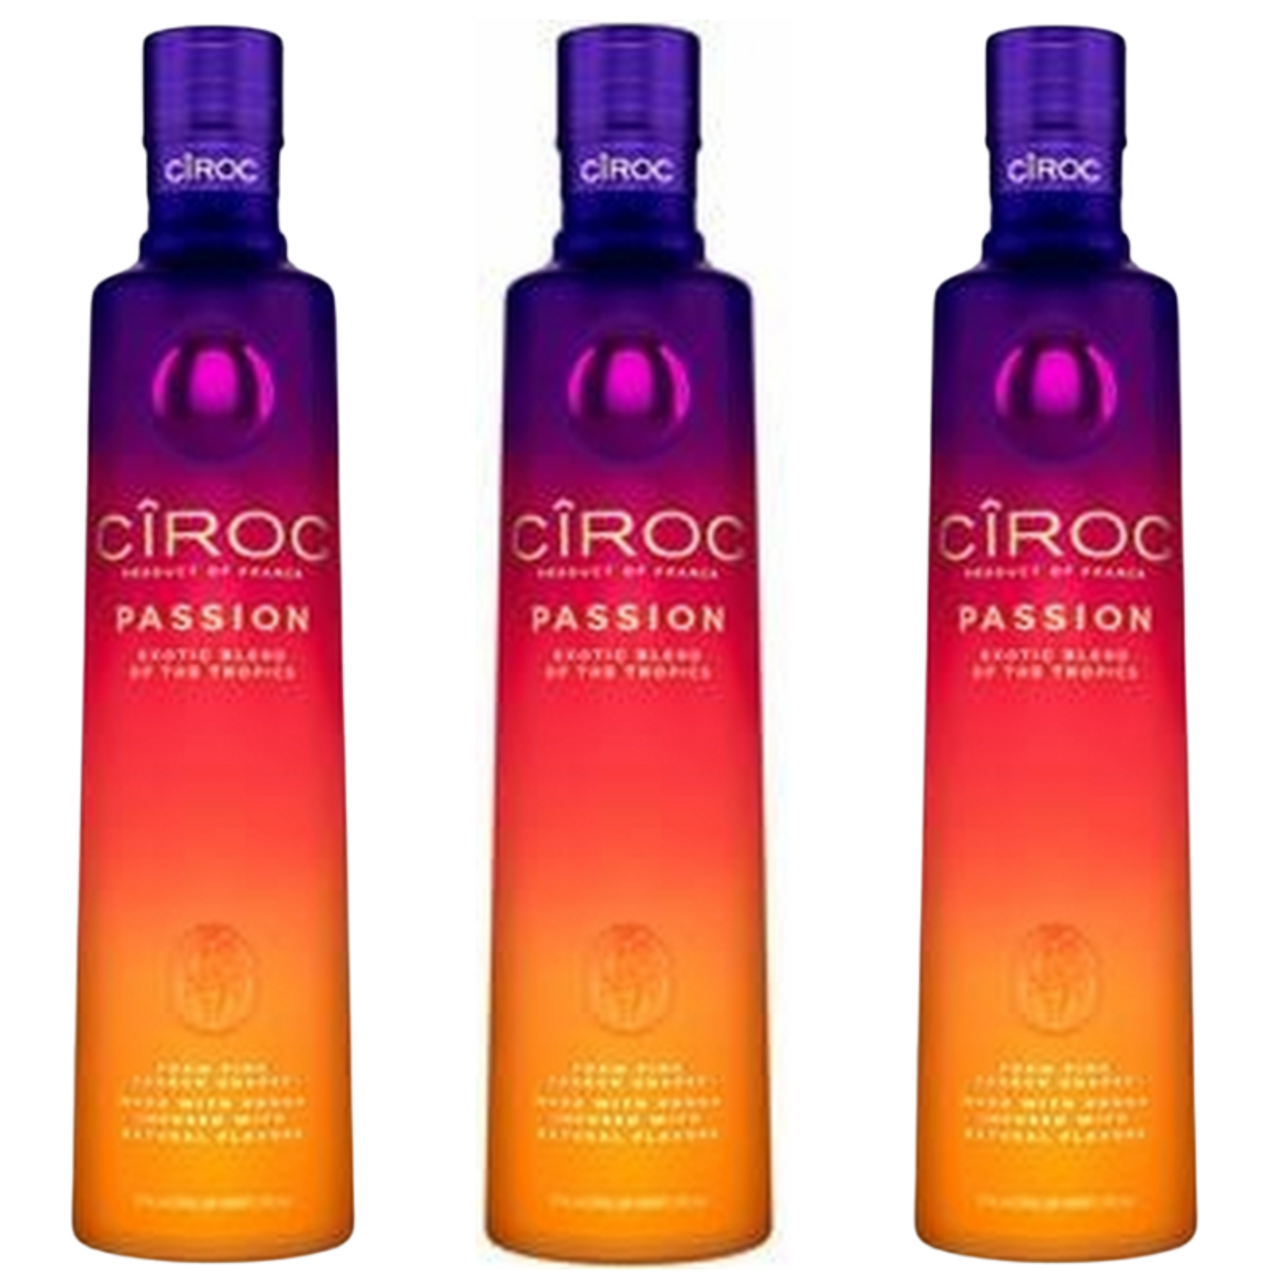 99 Passion Fruit Liqueur 50 ml